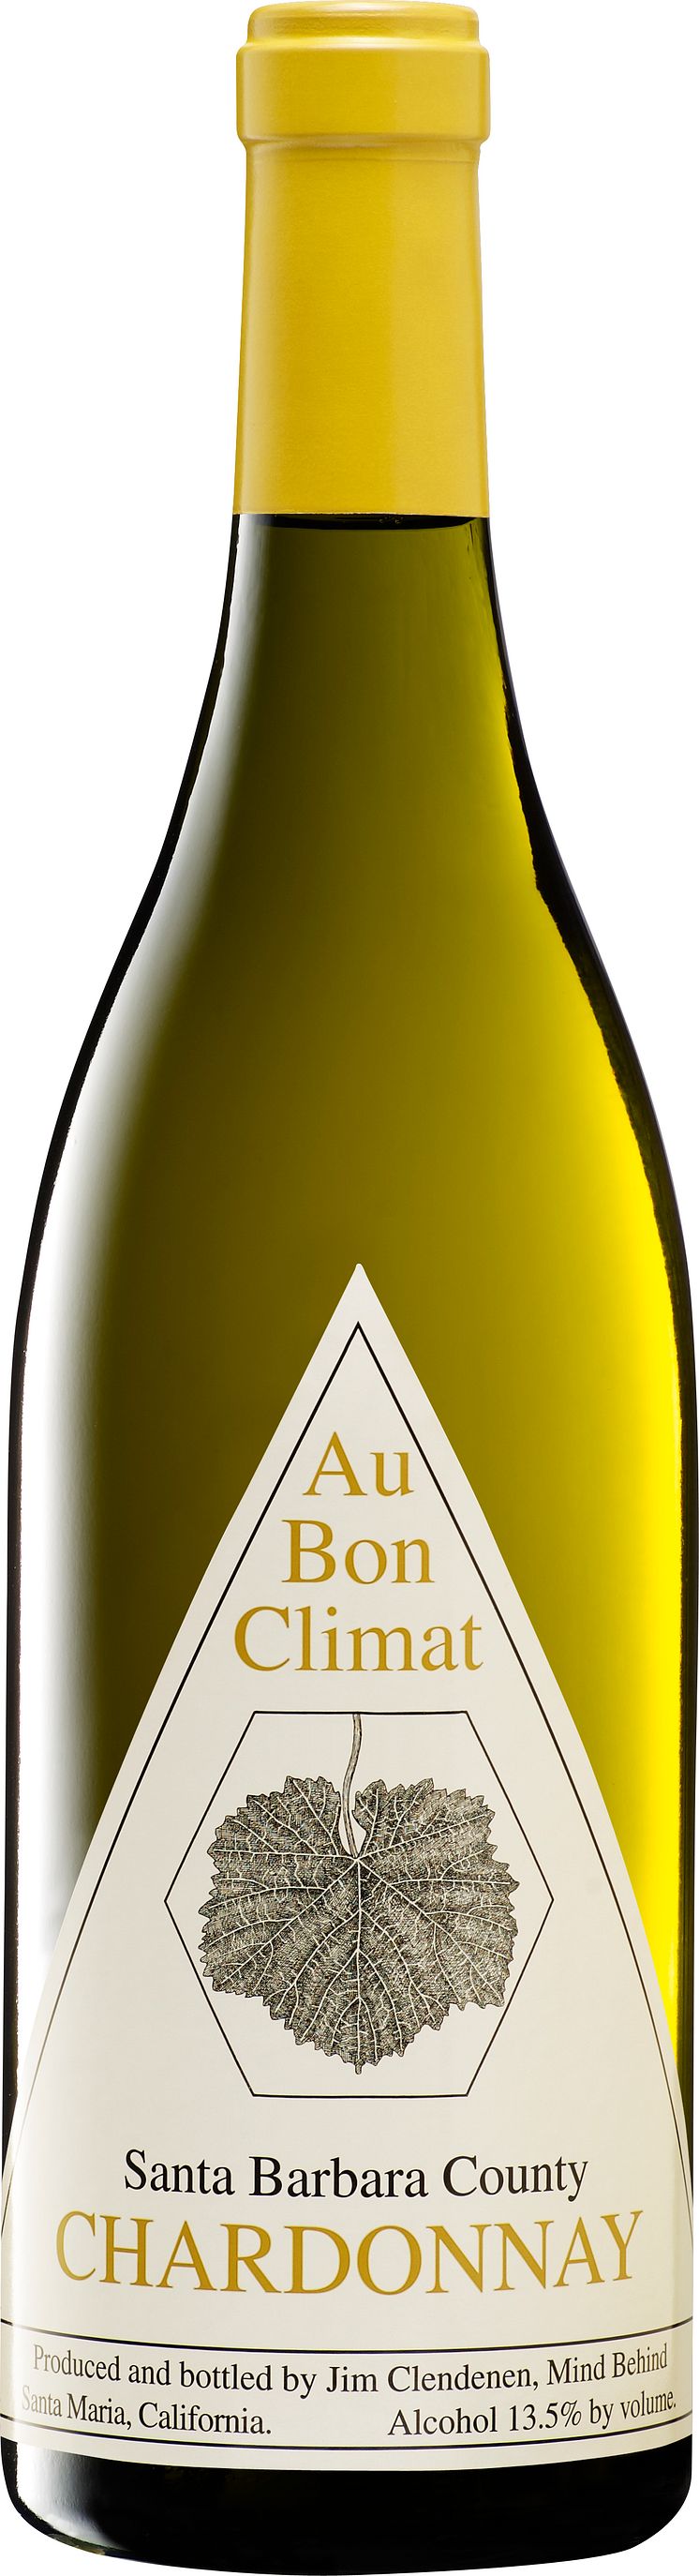 Au_Bon_Climat_Santa_Barbara_County_Chardonnay